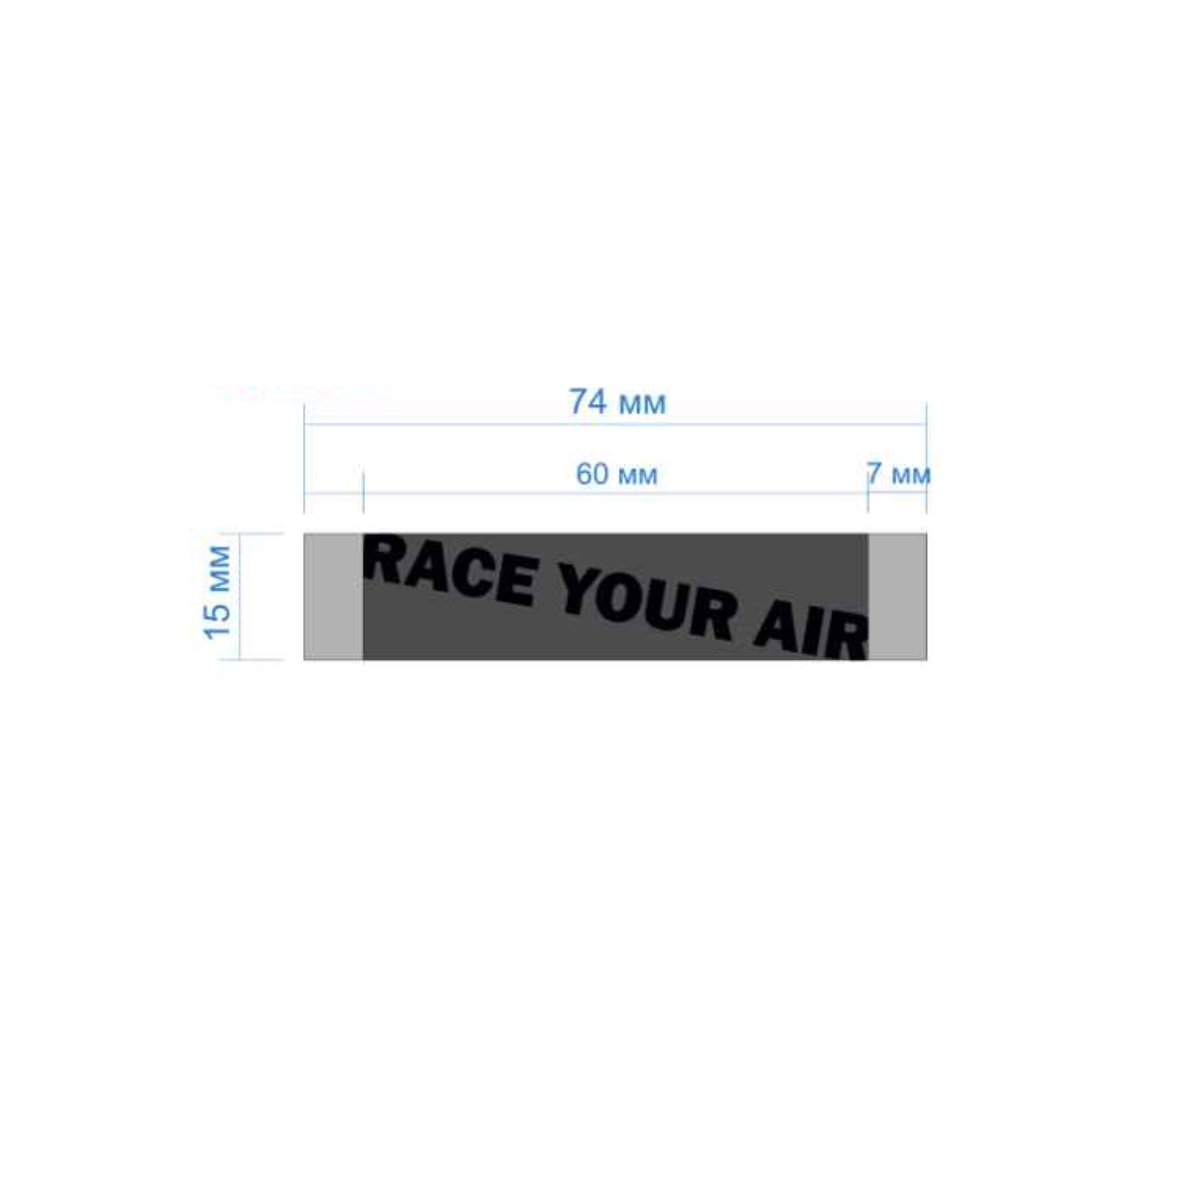 Этикетка тканевая Race your air 1,5см серая и черный лого /70 atki/, шт. Вышивка / этикетка тканевая